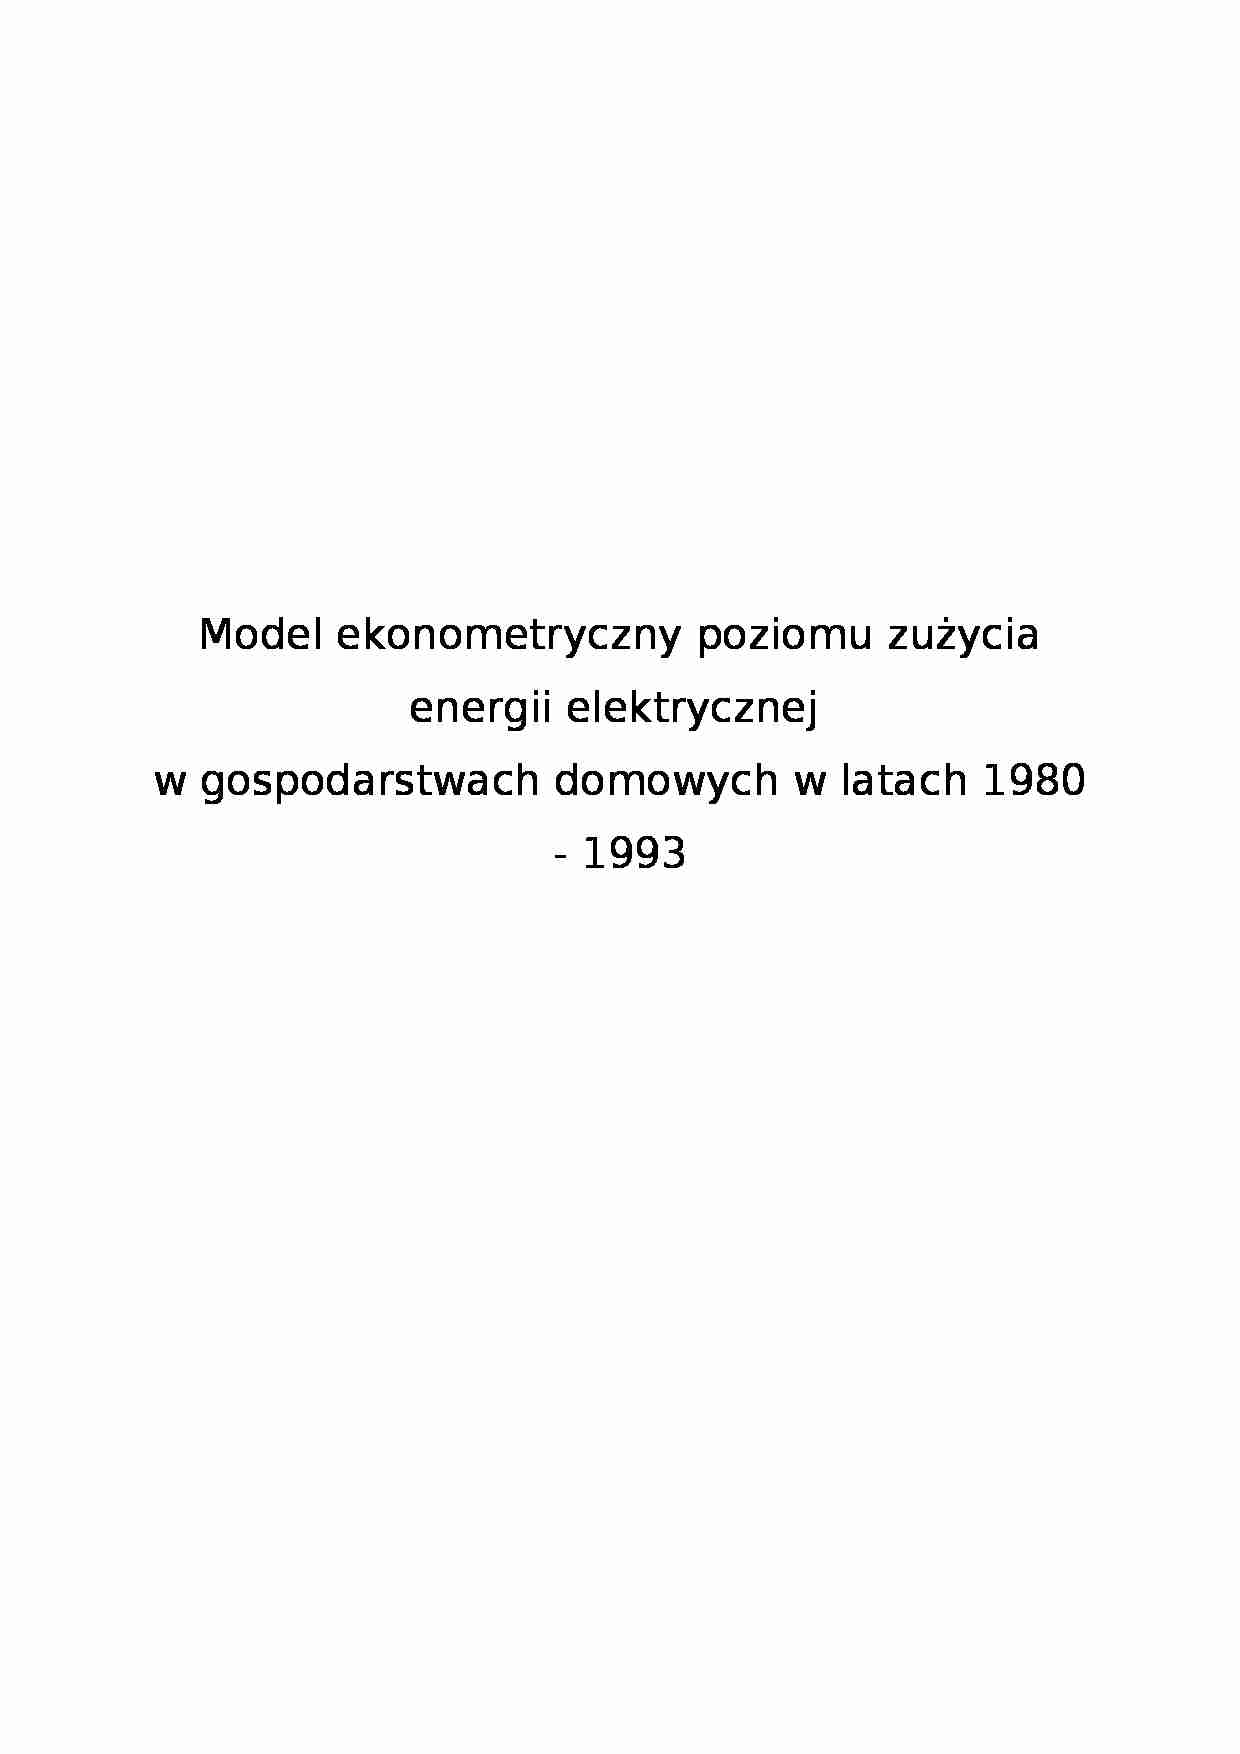 Model ekonometryczny poziomu zużycia energii elektrycznej - strona 1